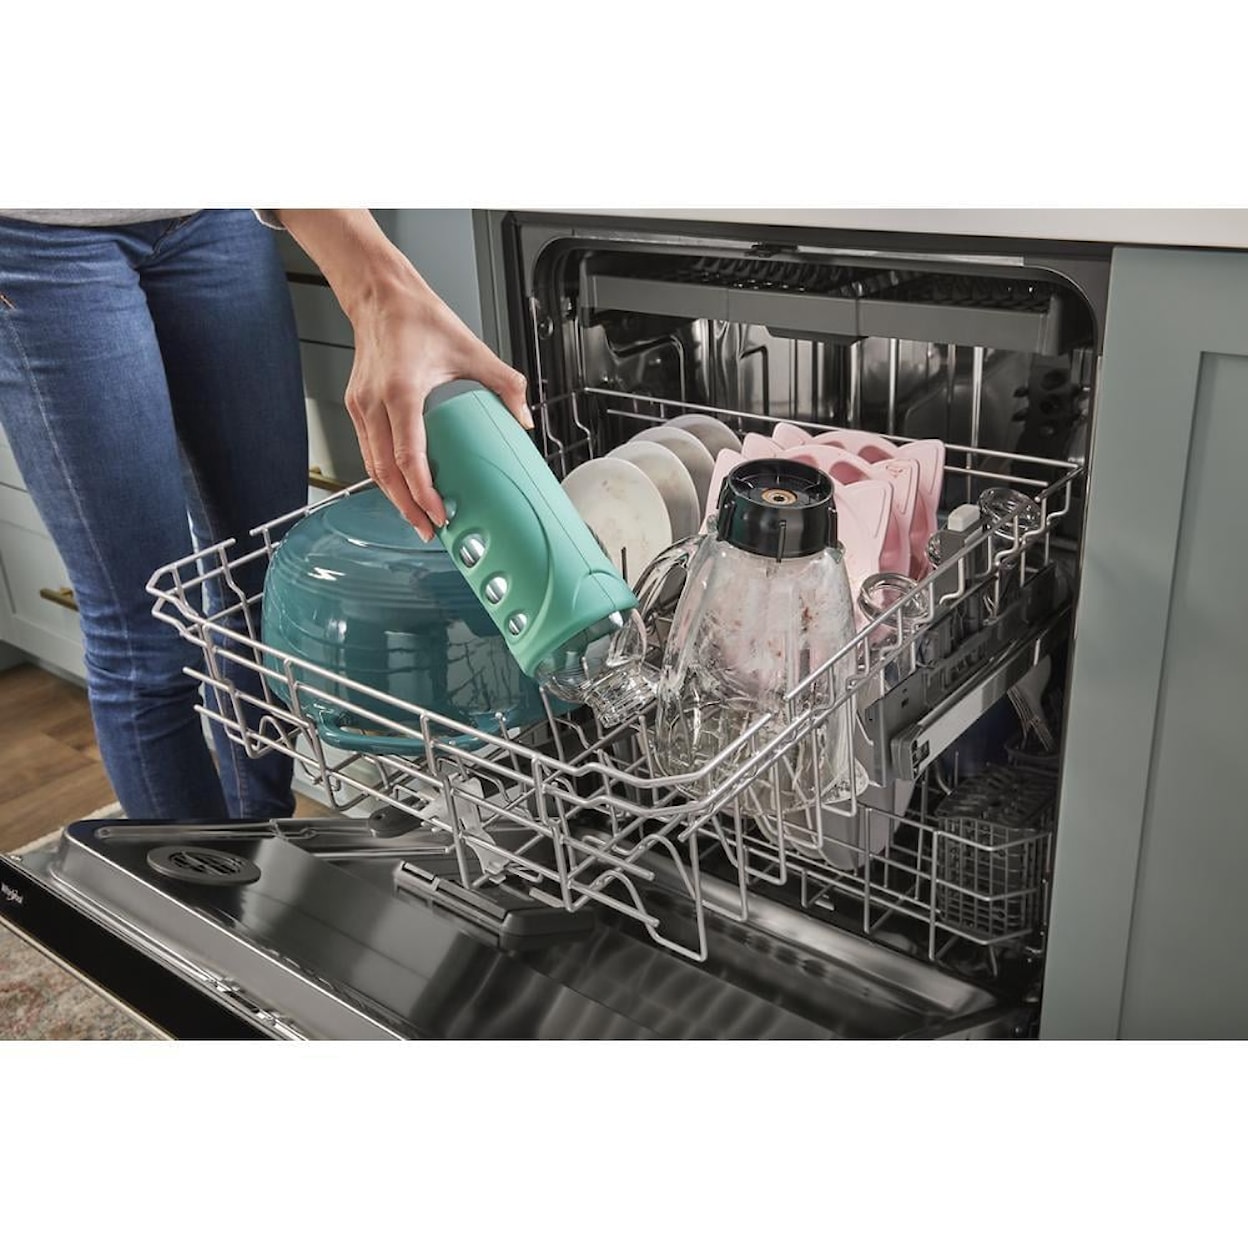 Whirlpool Dishwashers Dishwasher